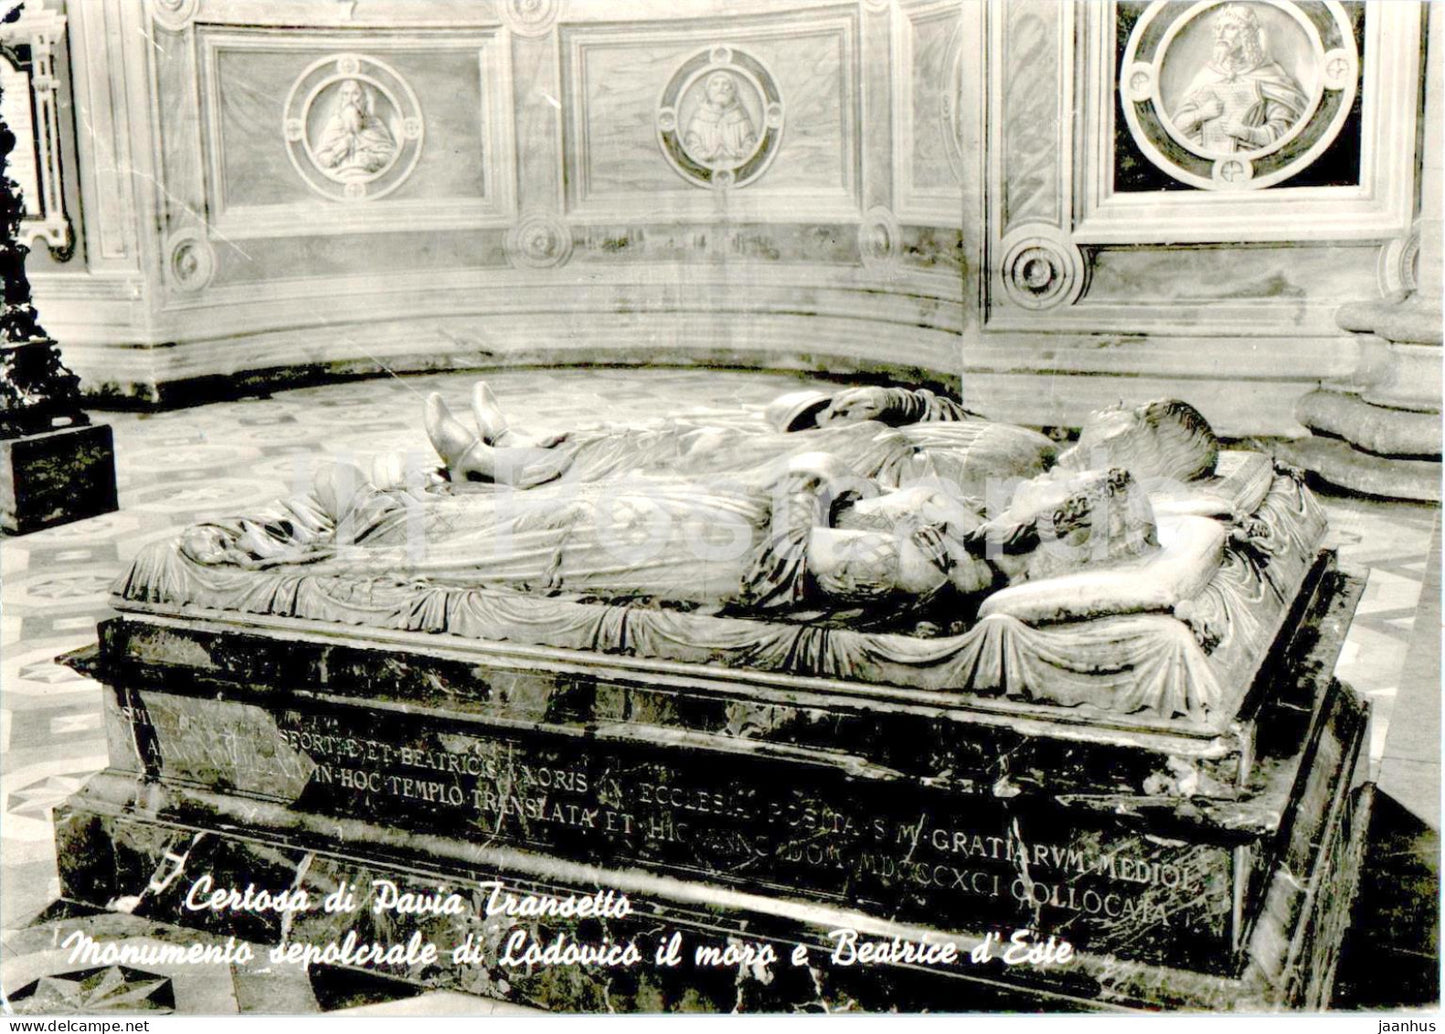 Certosa di Pavia Transetto - Monumento sepolclare di Lodovico il moro e Beatrice d'Este - 025 - Italy - used - JH Postcards